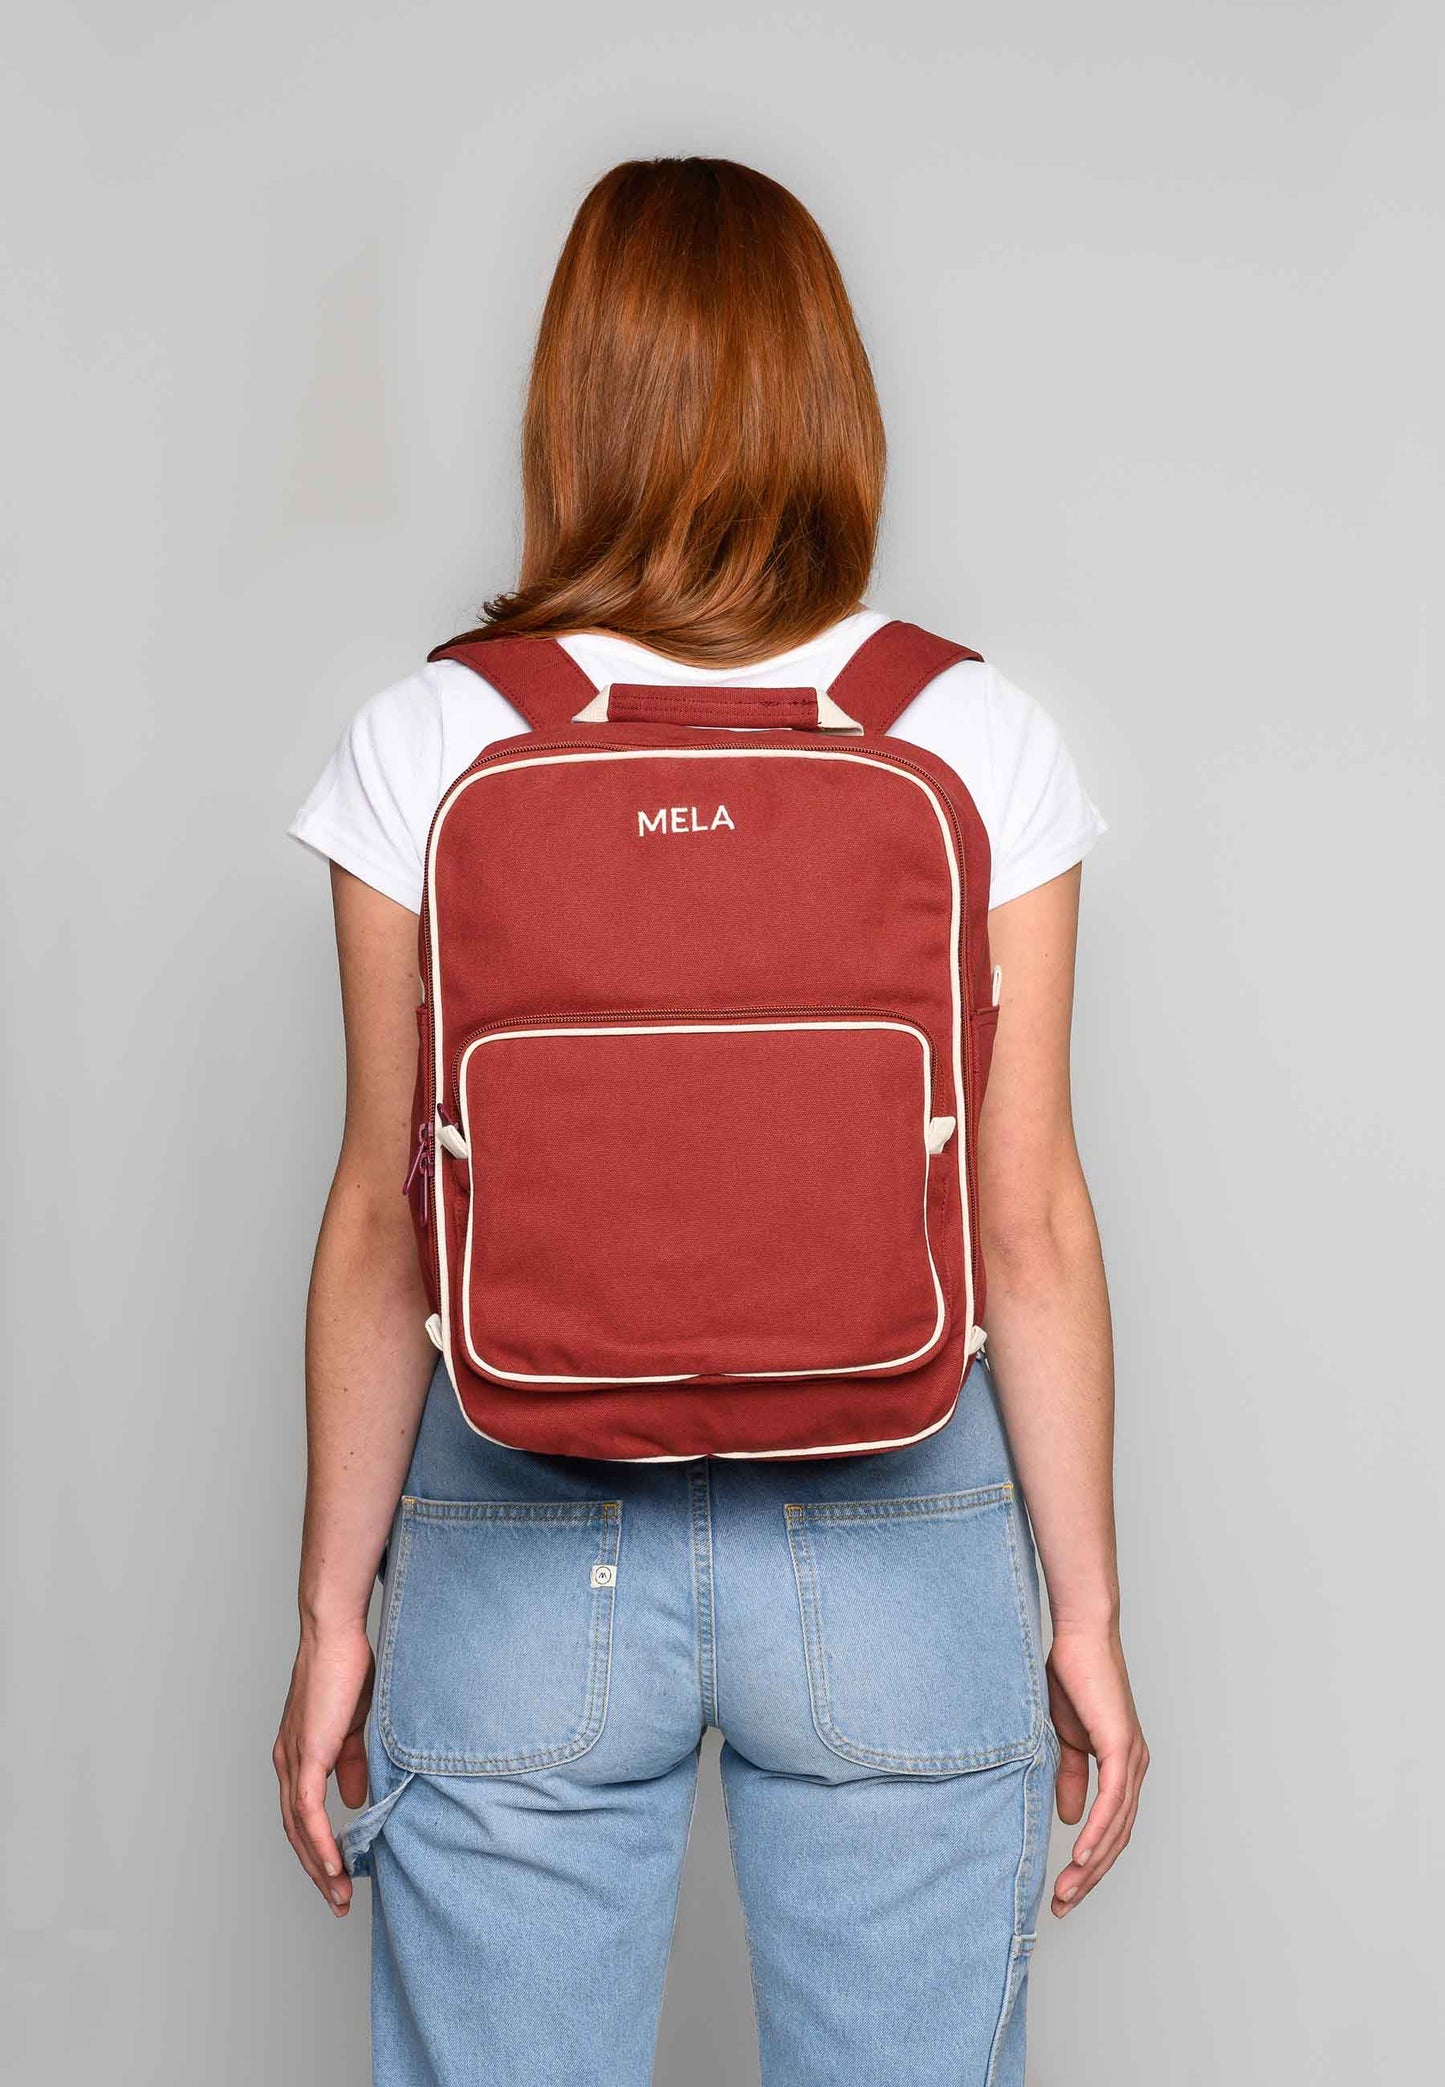 Melawear Backpack Mela II